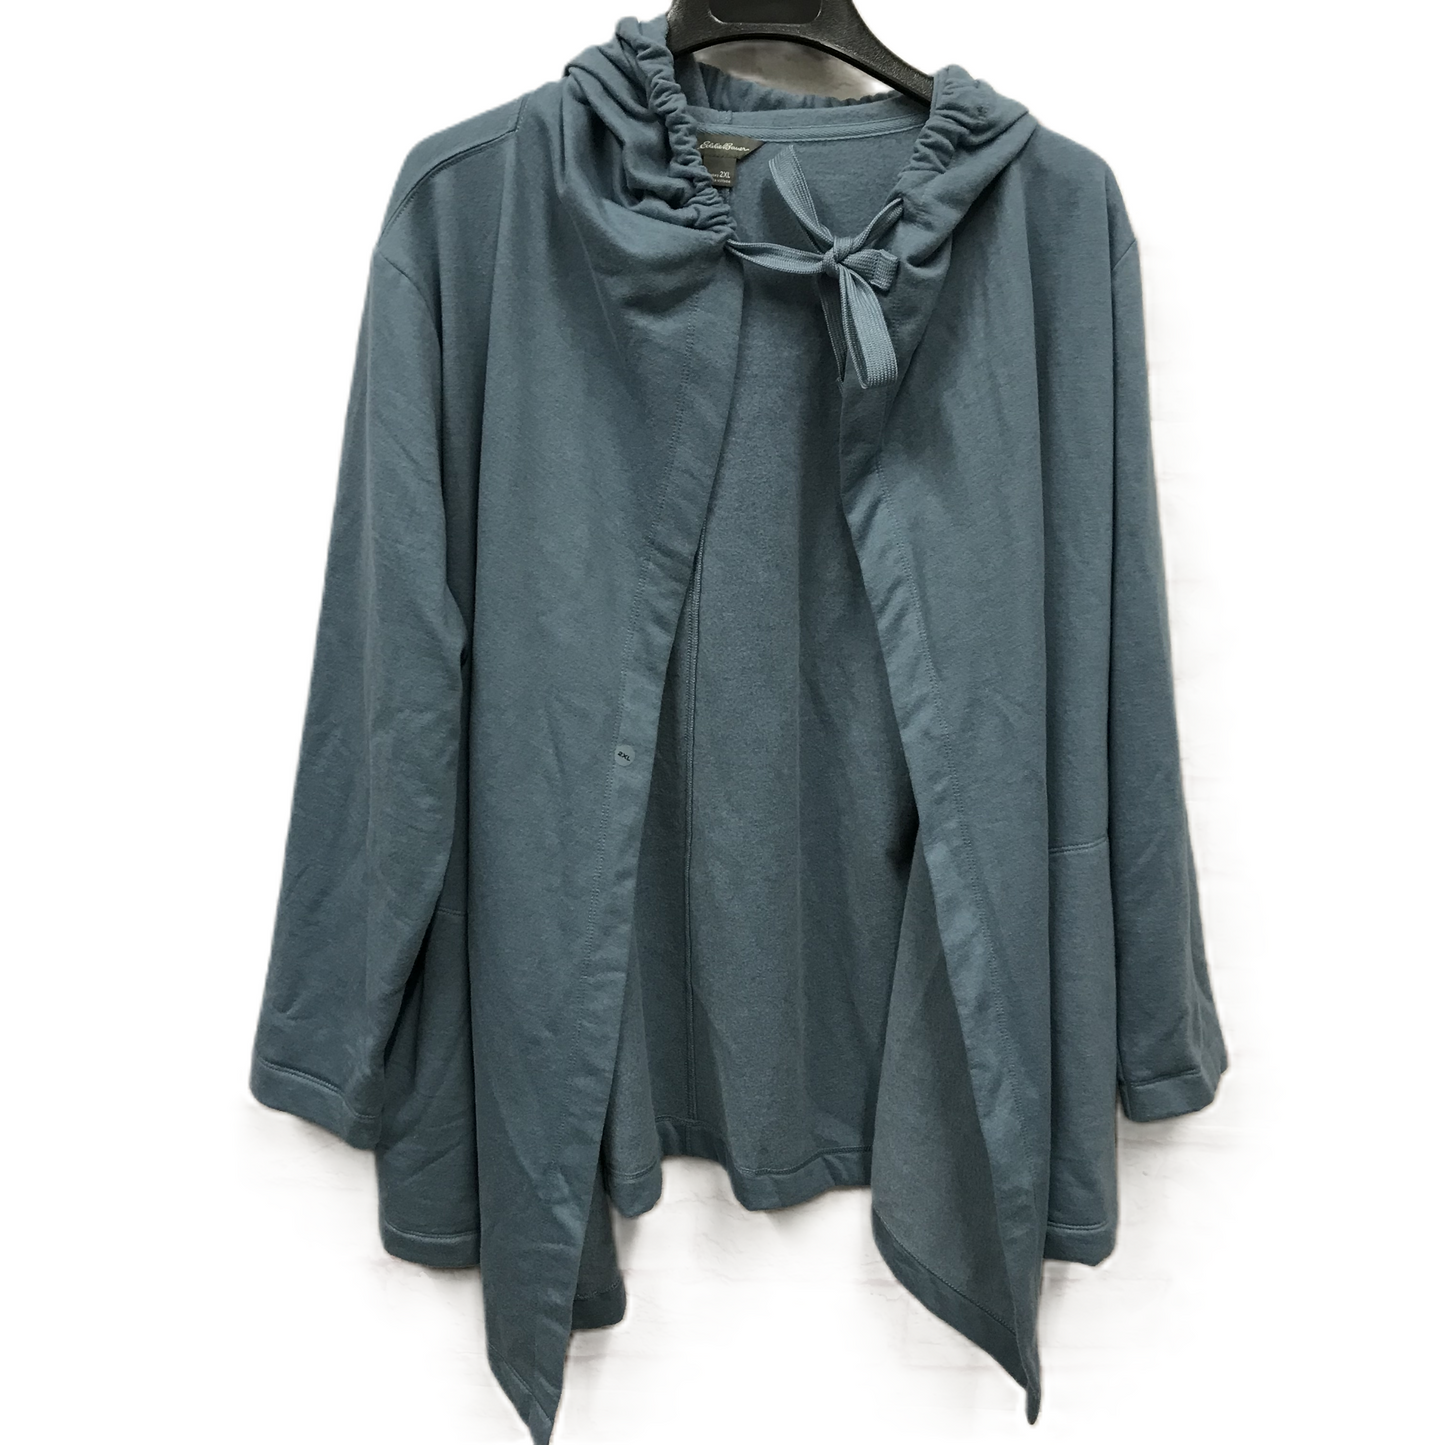 Blue Jacket Fleece By Eddie Bauer, Size: 2x